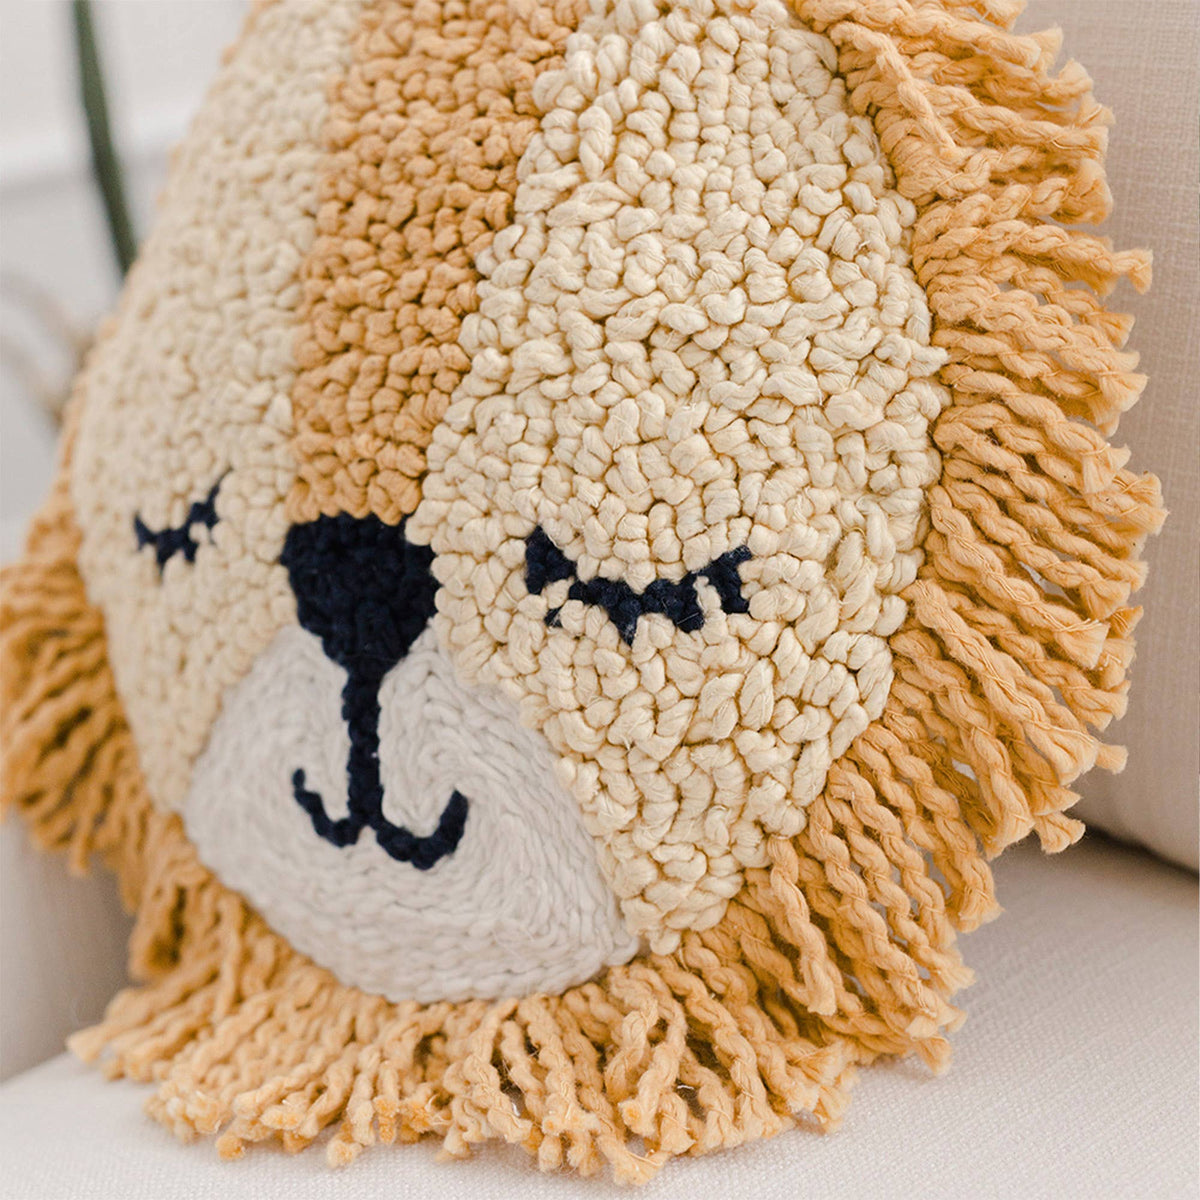 Lion Decorative Pillow